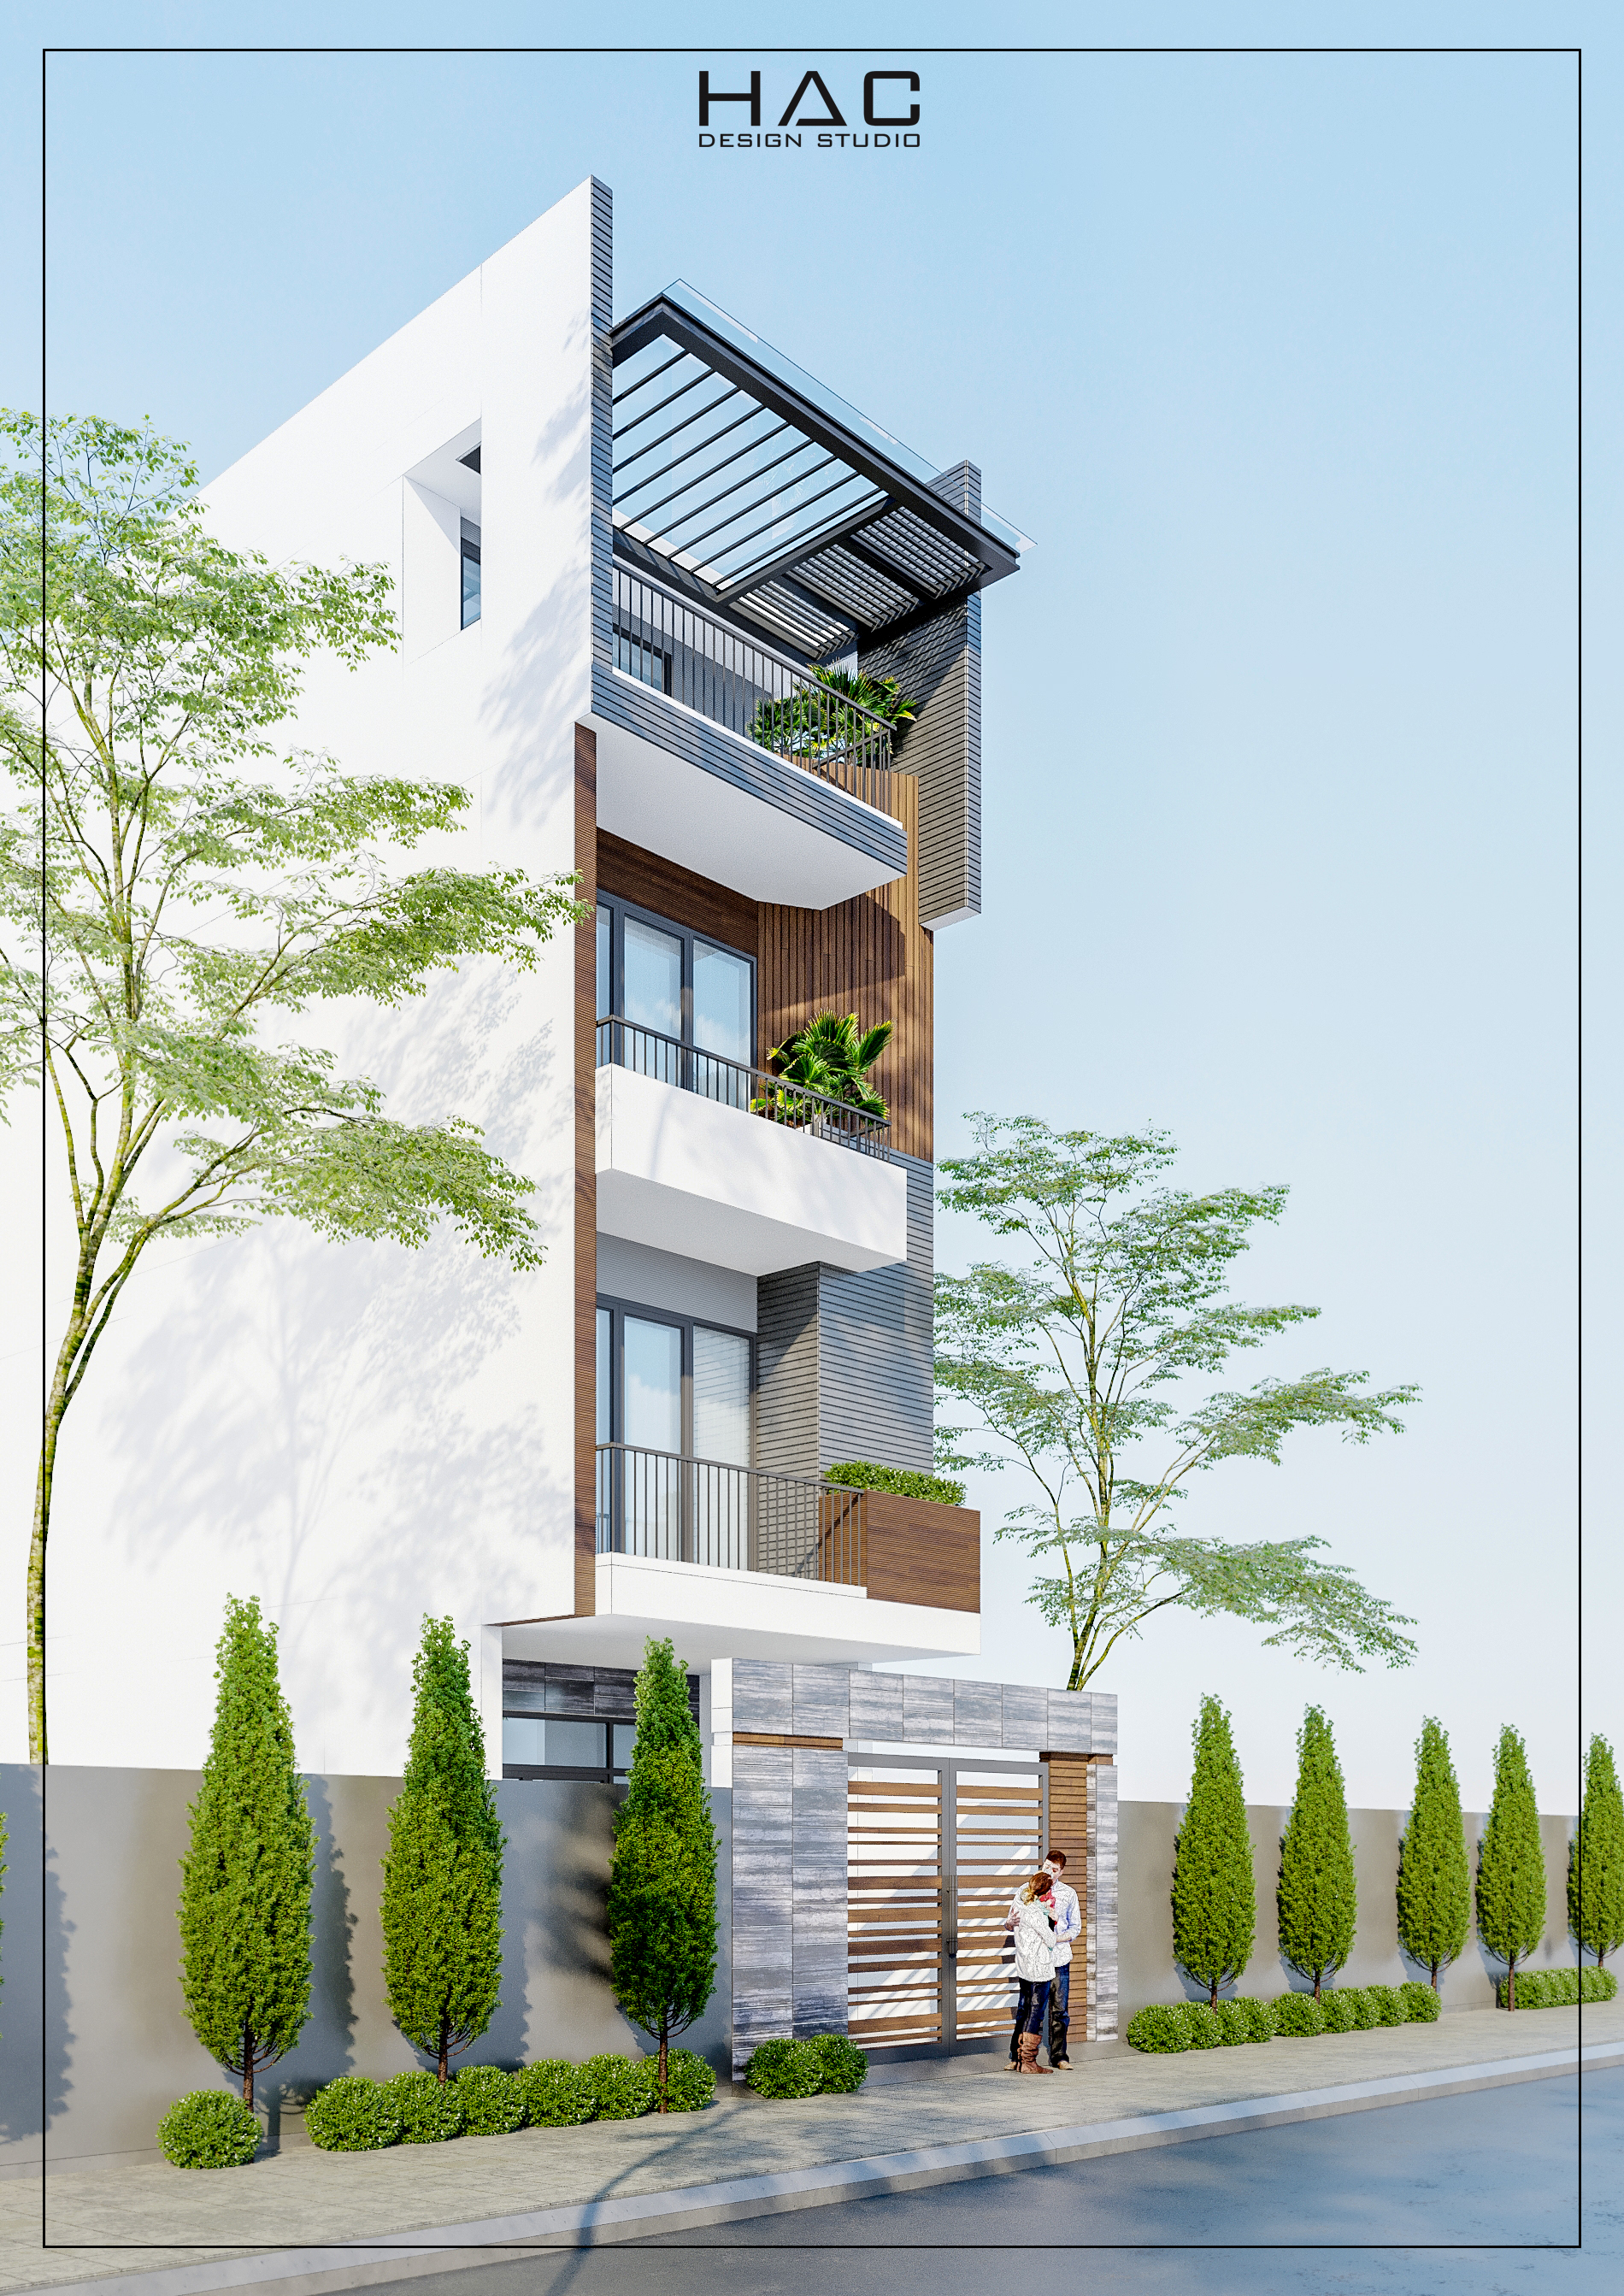 Thiết kế Nhà Mặt Phố tại Quảng Ninh Thiết kế nhà phố tại t/p Hạ Long - Quảng Ninh 1620636493 1